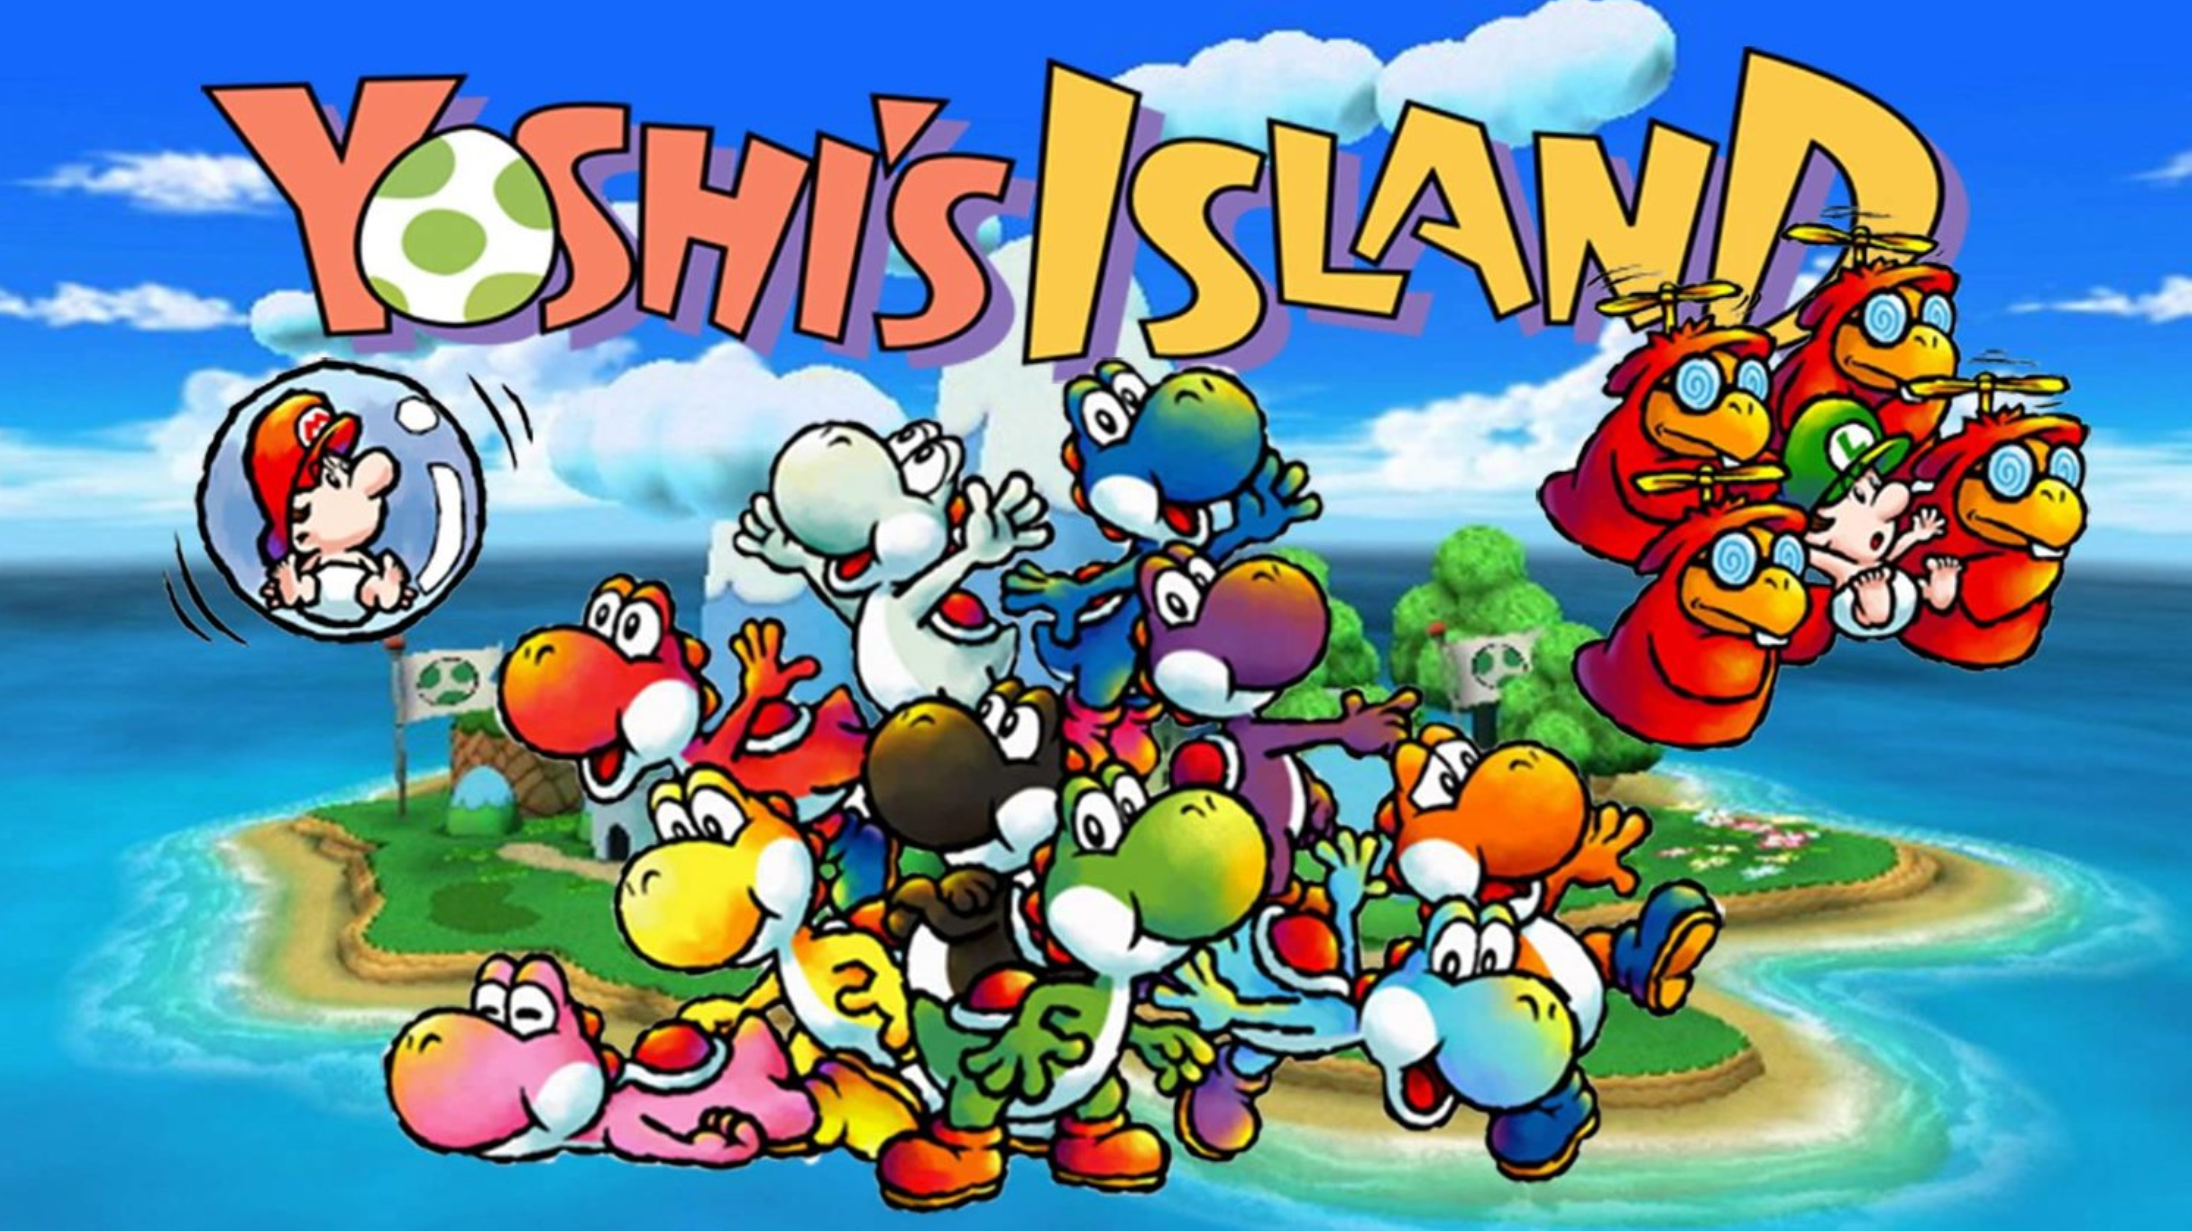 Mario yoshi island. Super Mario World 2 Yoshi's Island. Super Mario World 2 Yoshis Island. Super Mario World 2 остров Йоши. Super Mario World 2 - Yoshi's Island Snes.